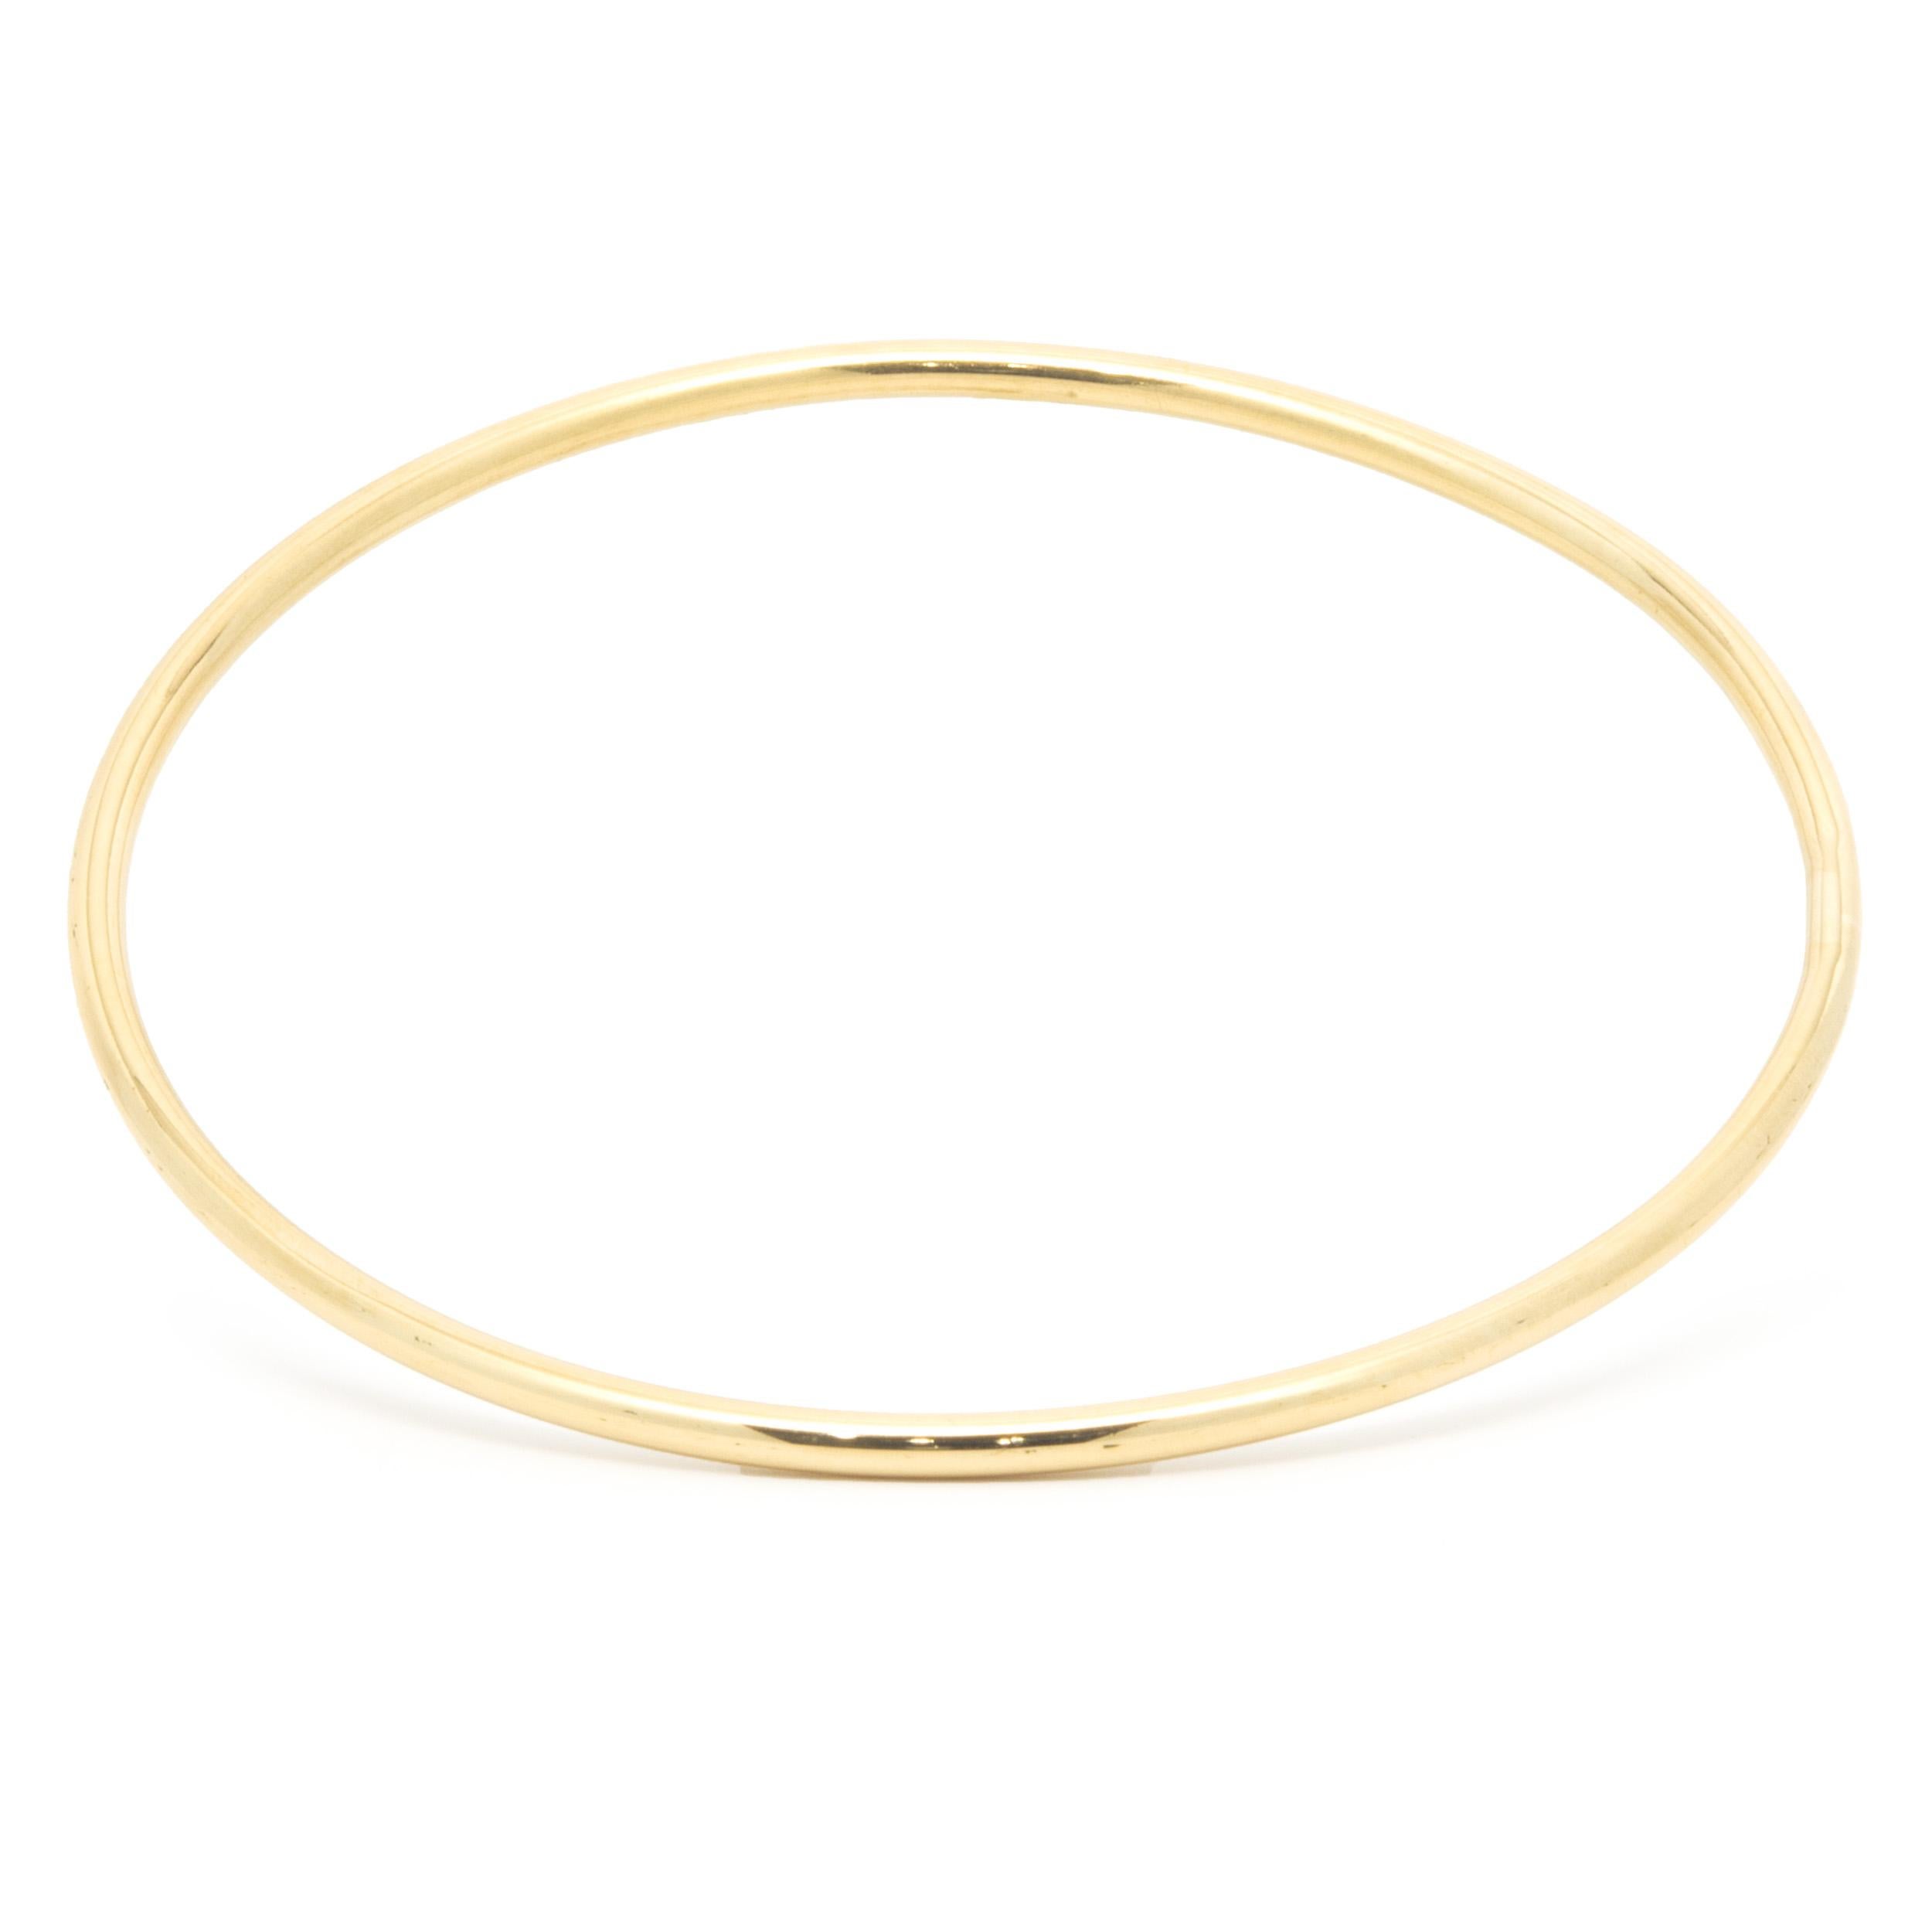 Matériau : Or jaune 18K
Dimensions : le bracelet convient à un poignet de 7 pouces maximum.
Poids : 14,77 grammes